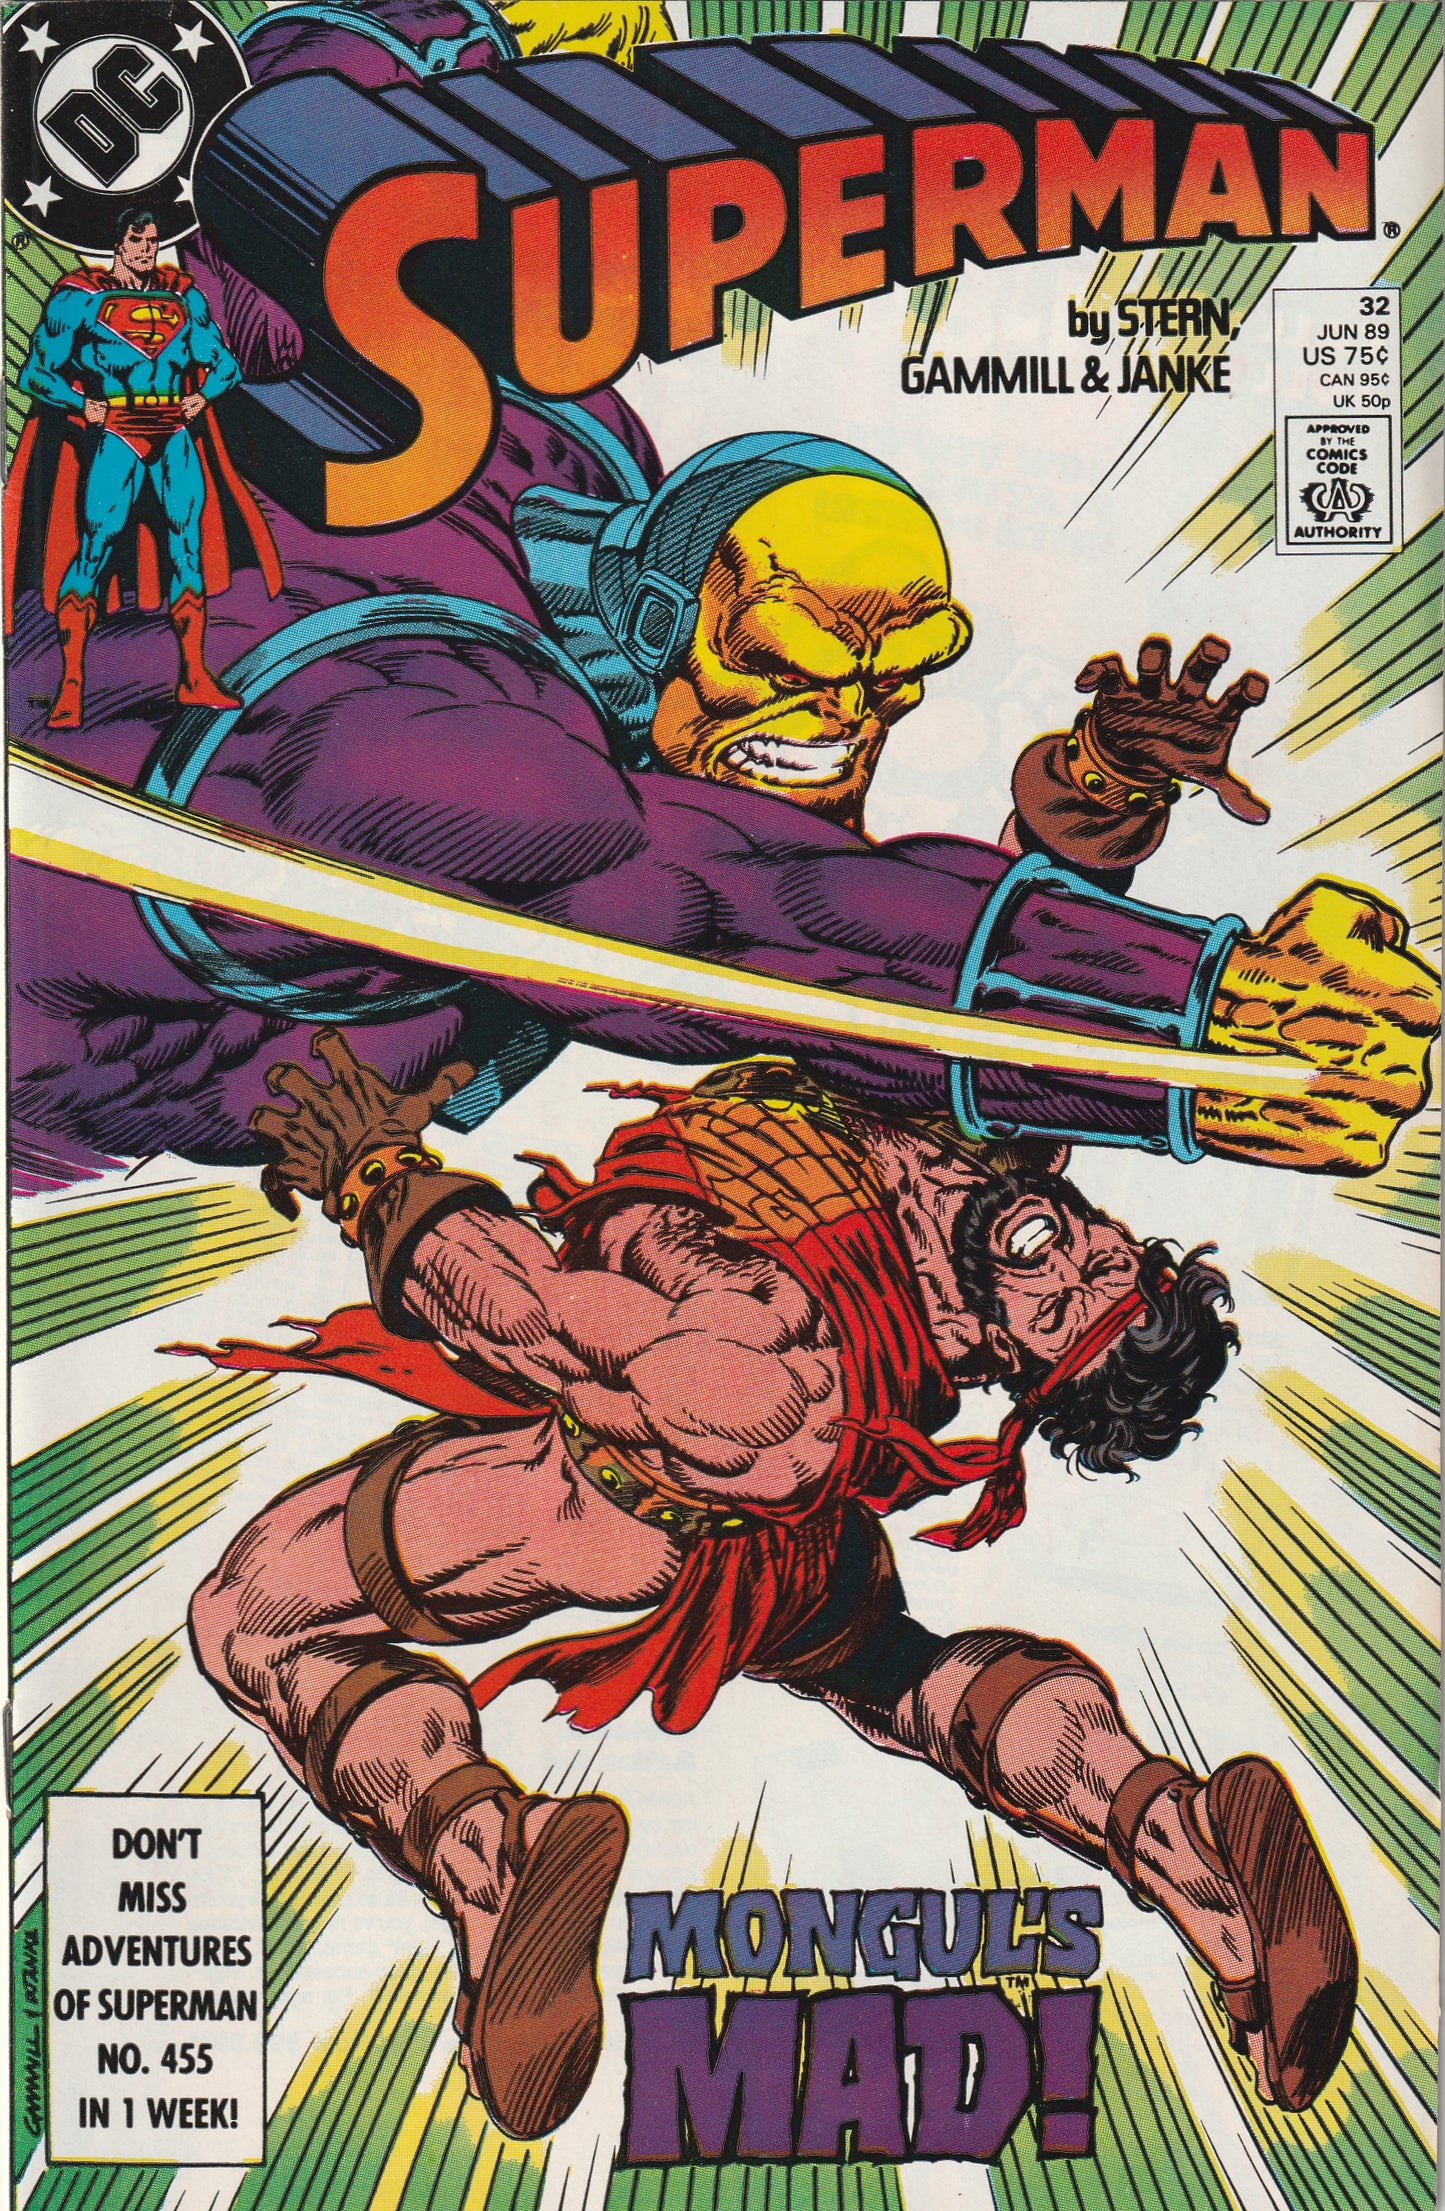 Superman #32 (Vol 2, 1989)